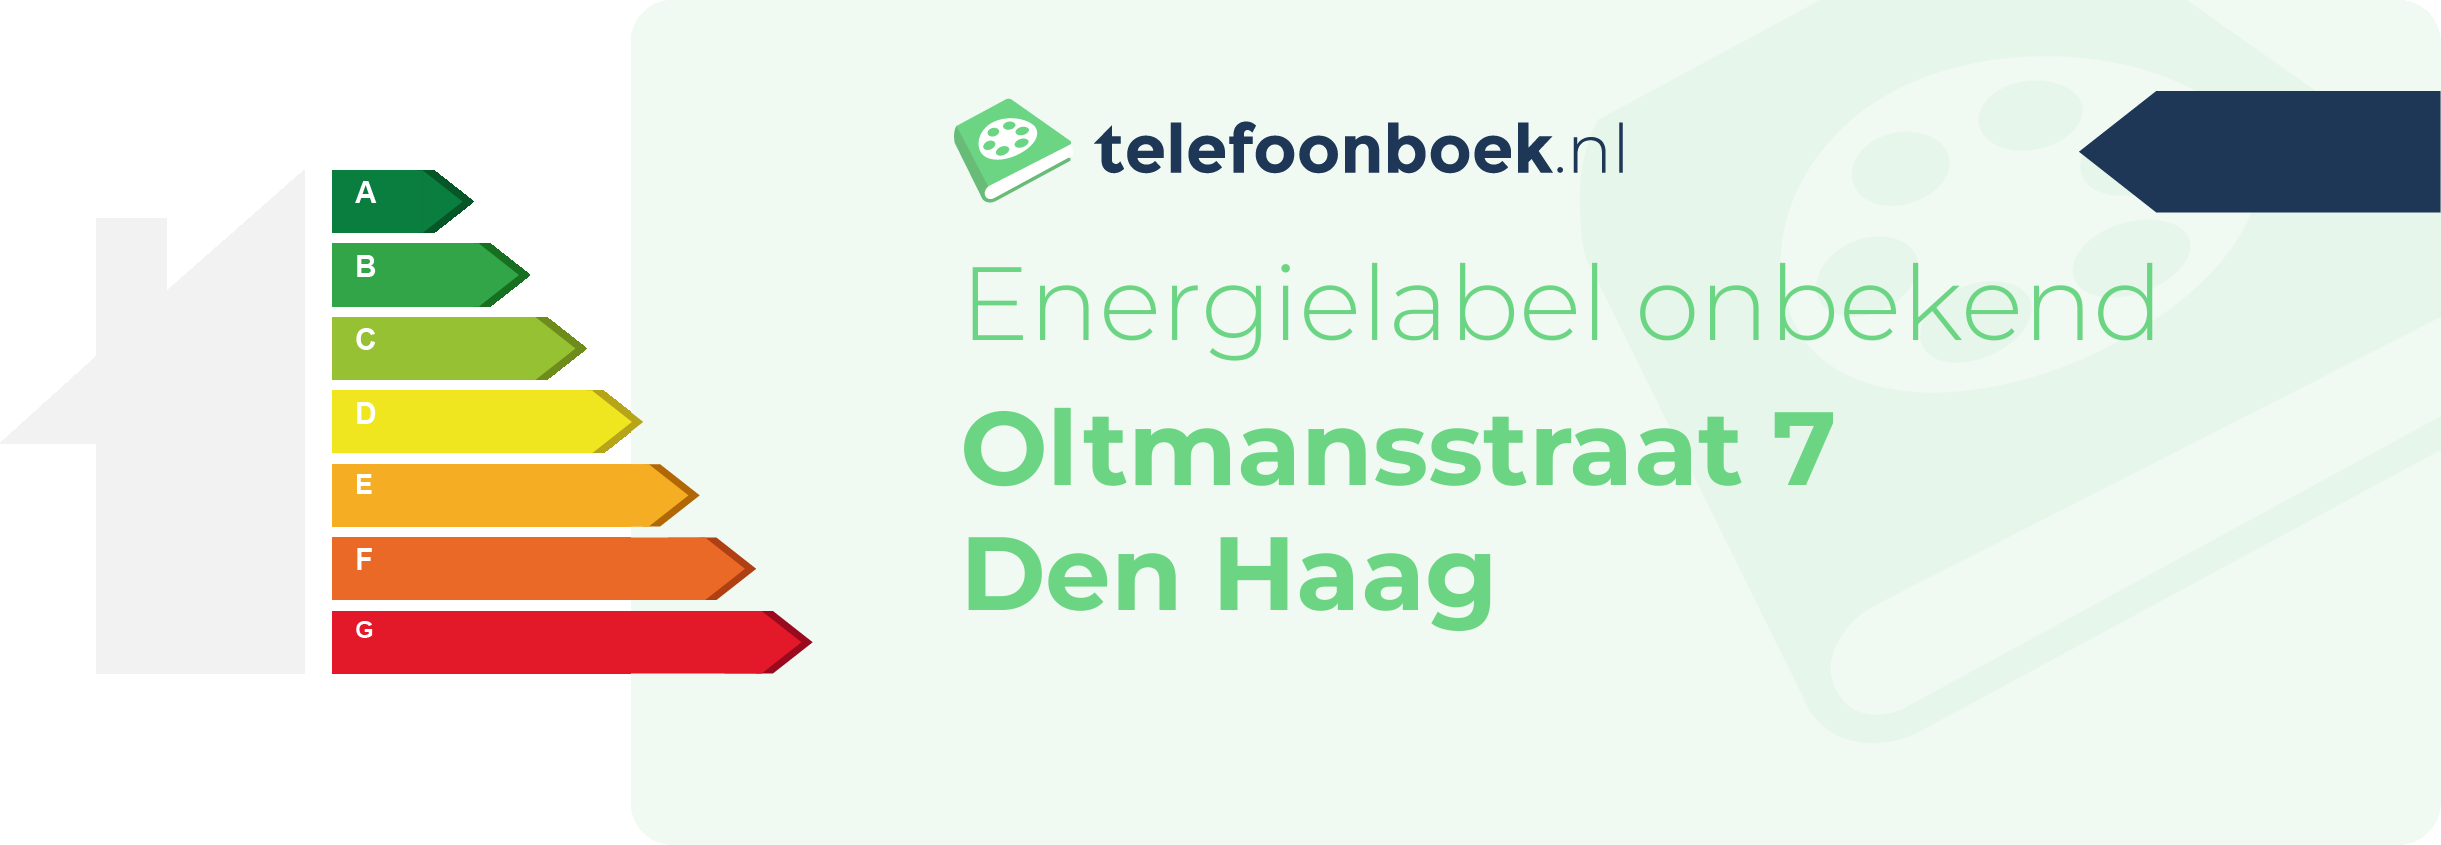 Energielabel Oltmansstraat 7 Den Haag